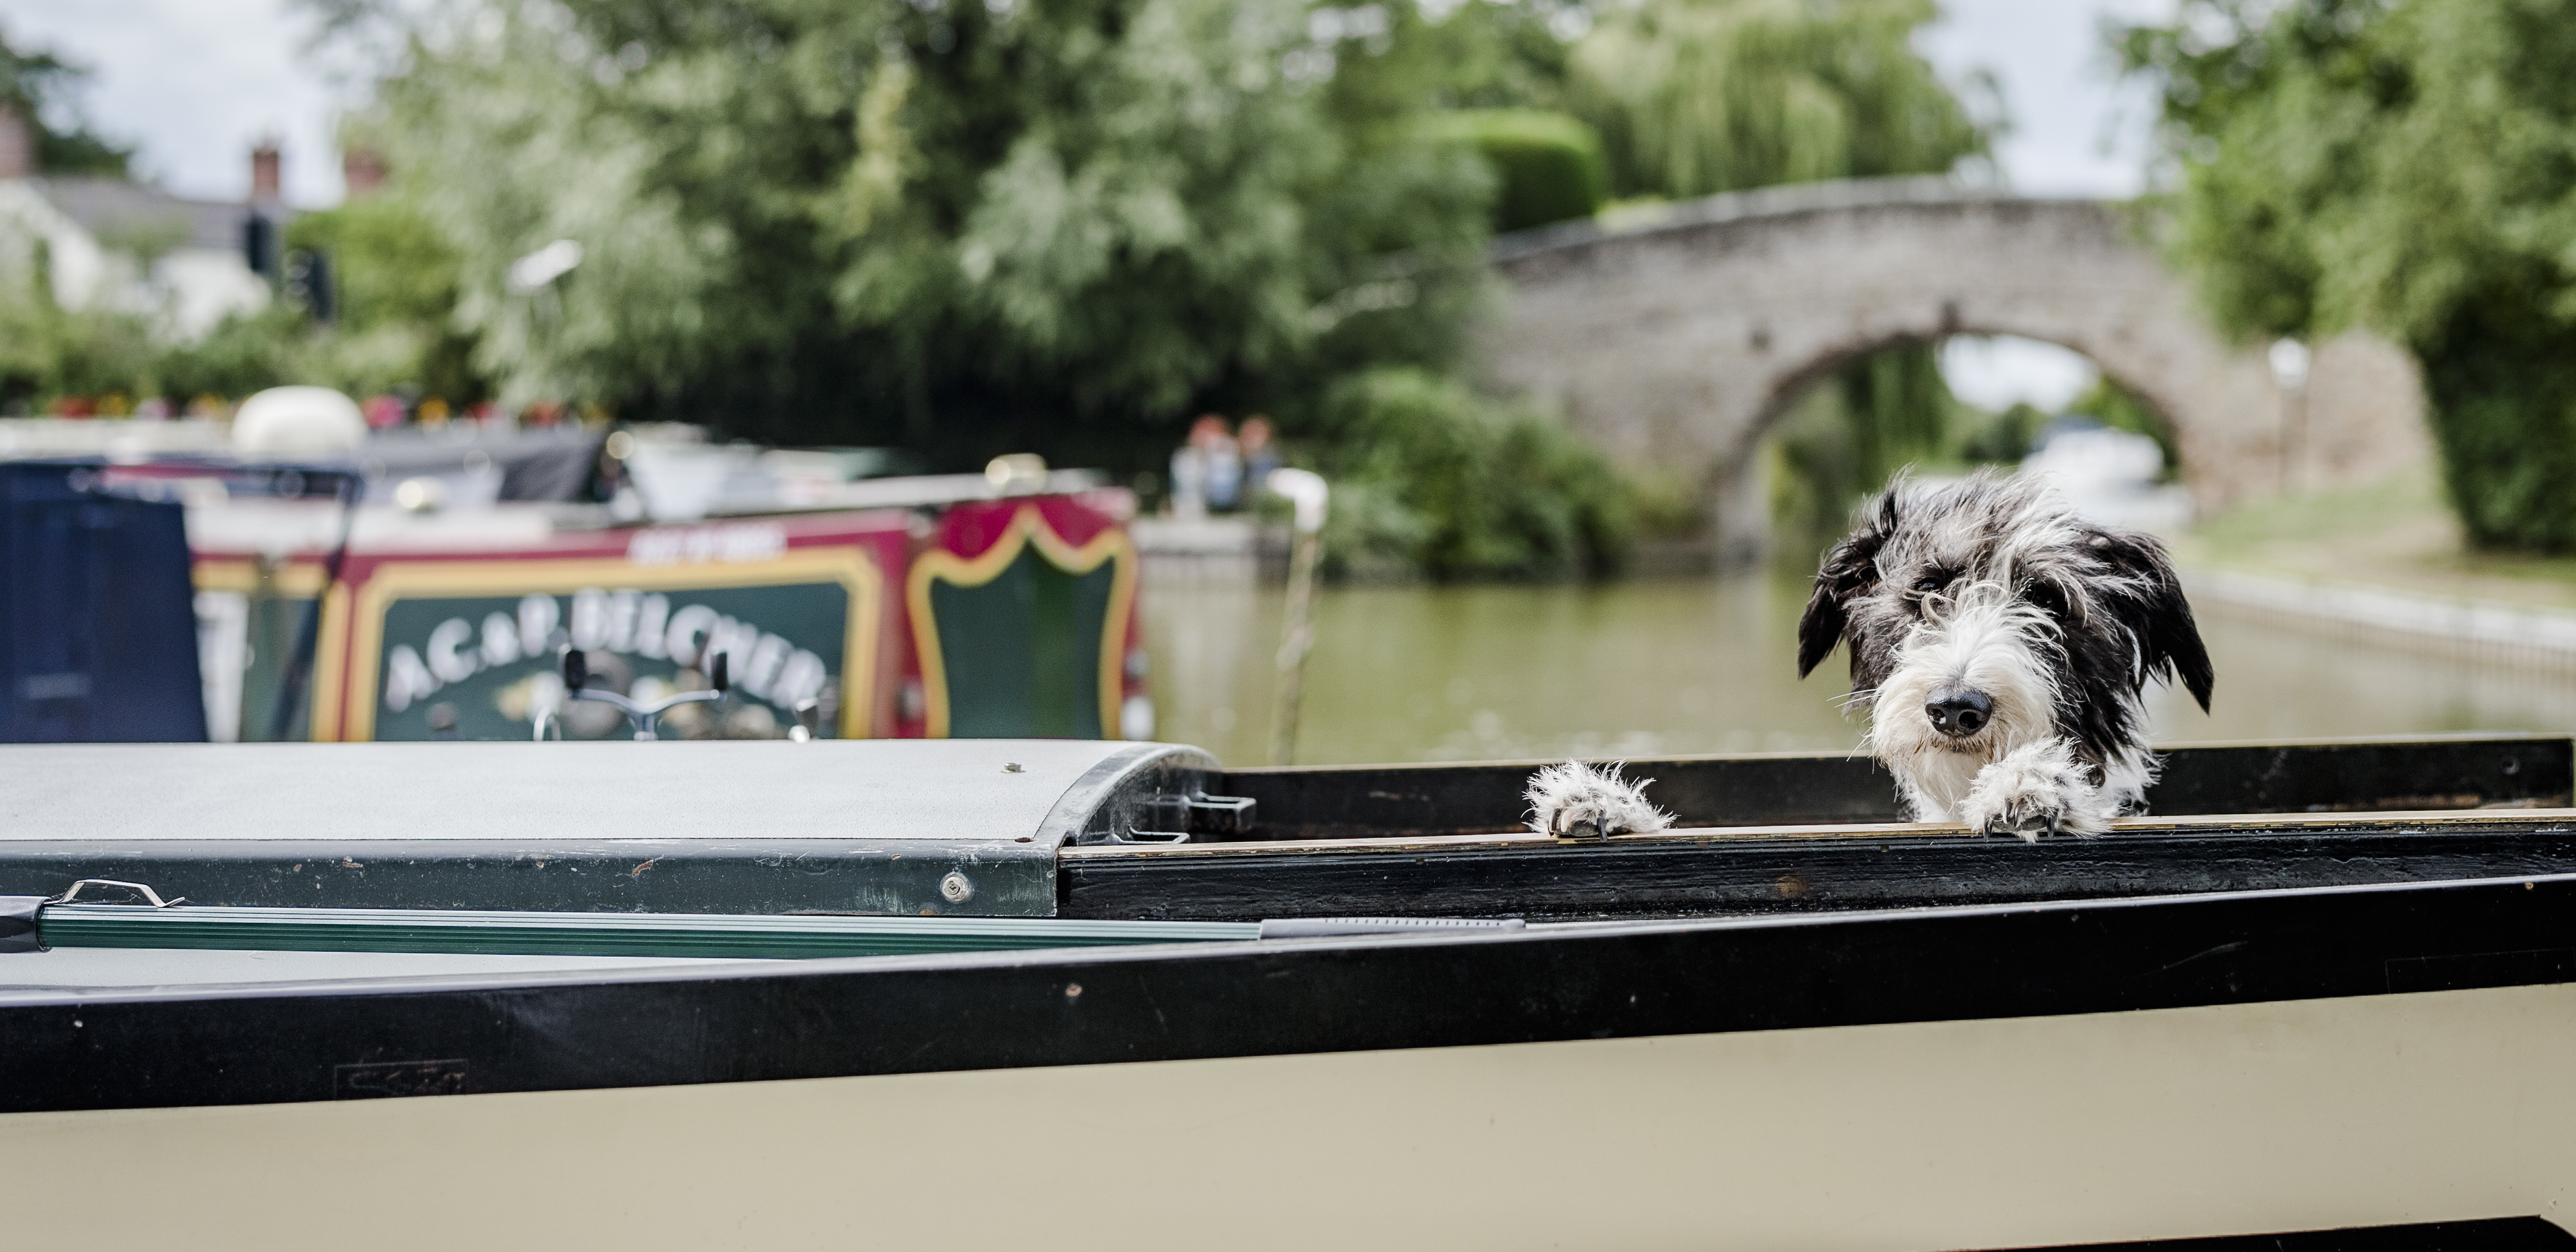 Dog Edward on his barge